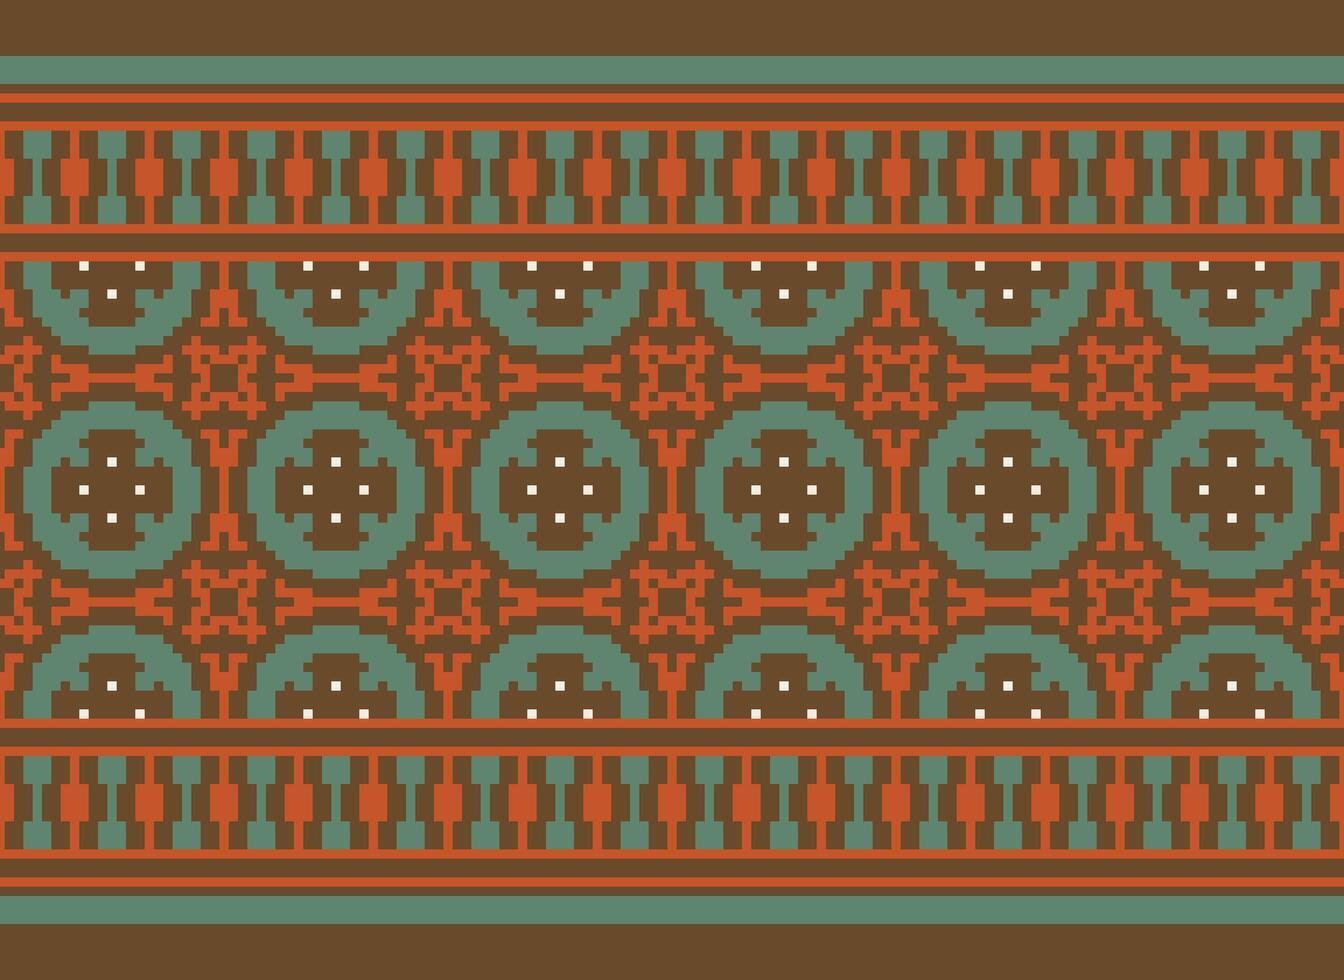 schön Blumen- Kreuz Stich Muster.geometrisch ethnisch orientalisch Muster traditionell Hintergrund.aztec Stil abstrakt Vektor illustration.design zum textur, stoff, kleidung, verpackung, dekoration, teppich.